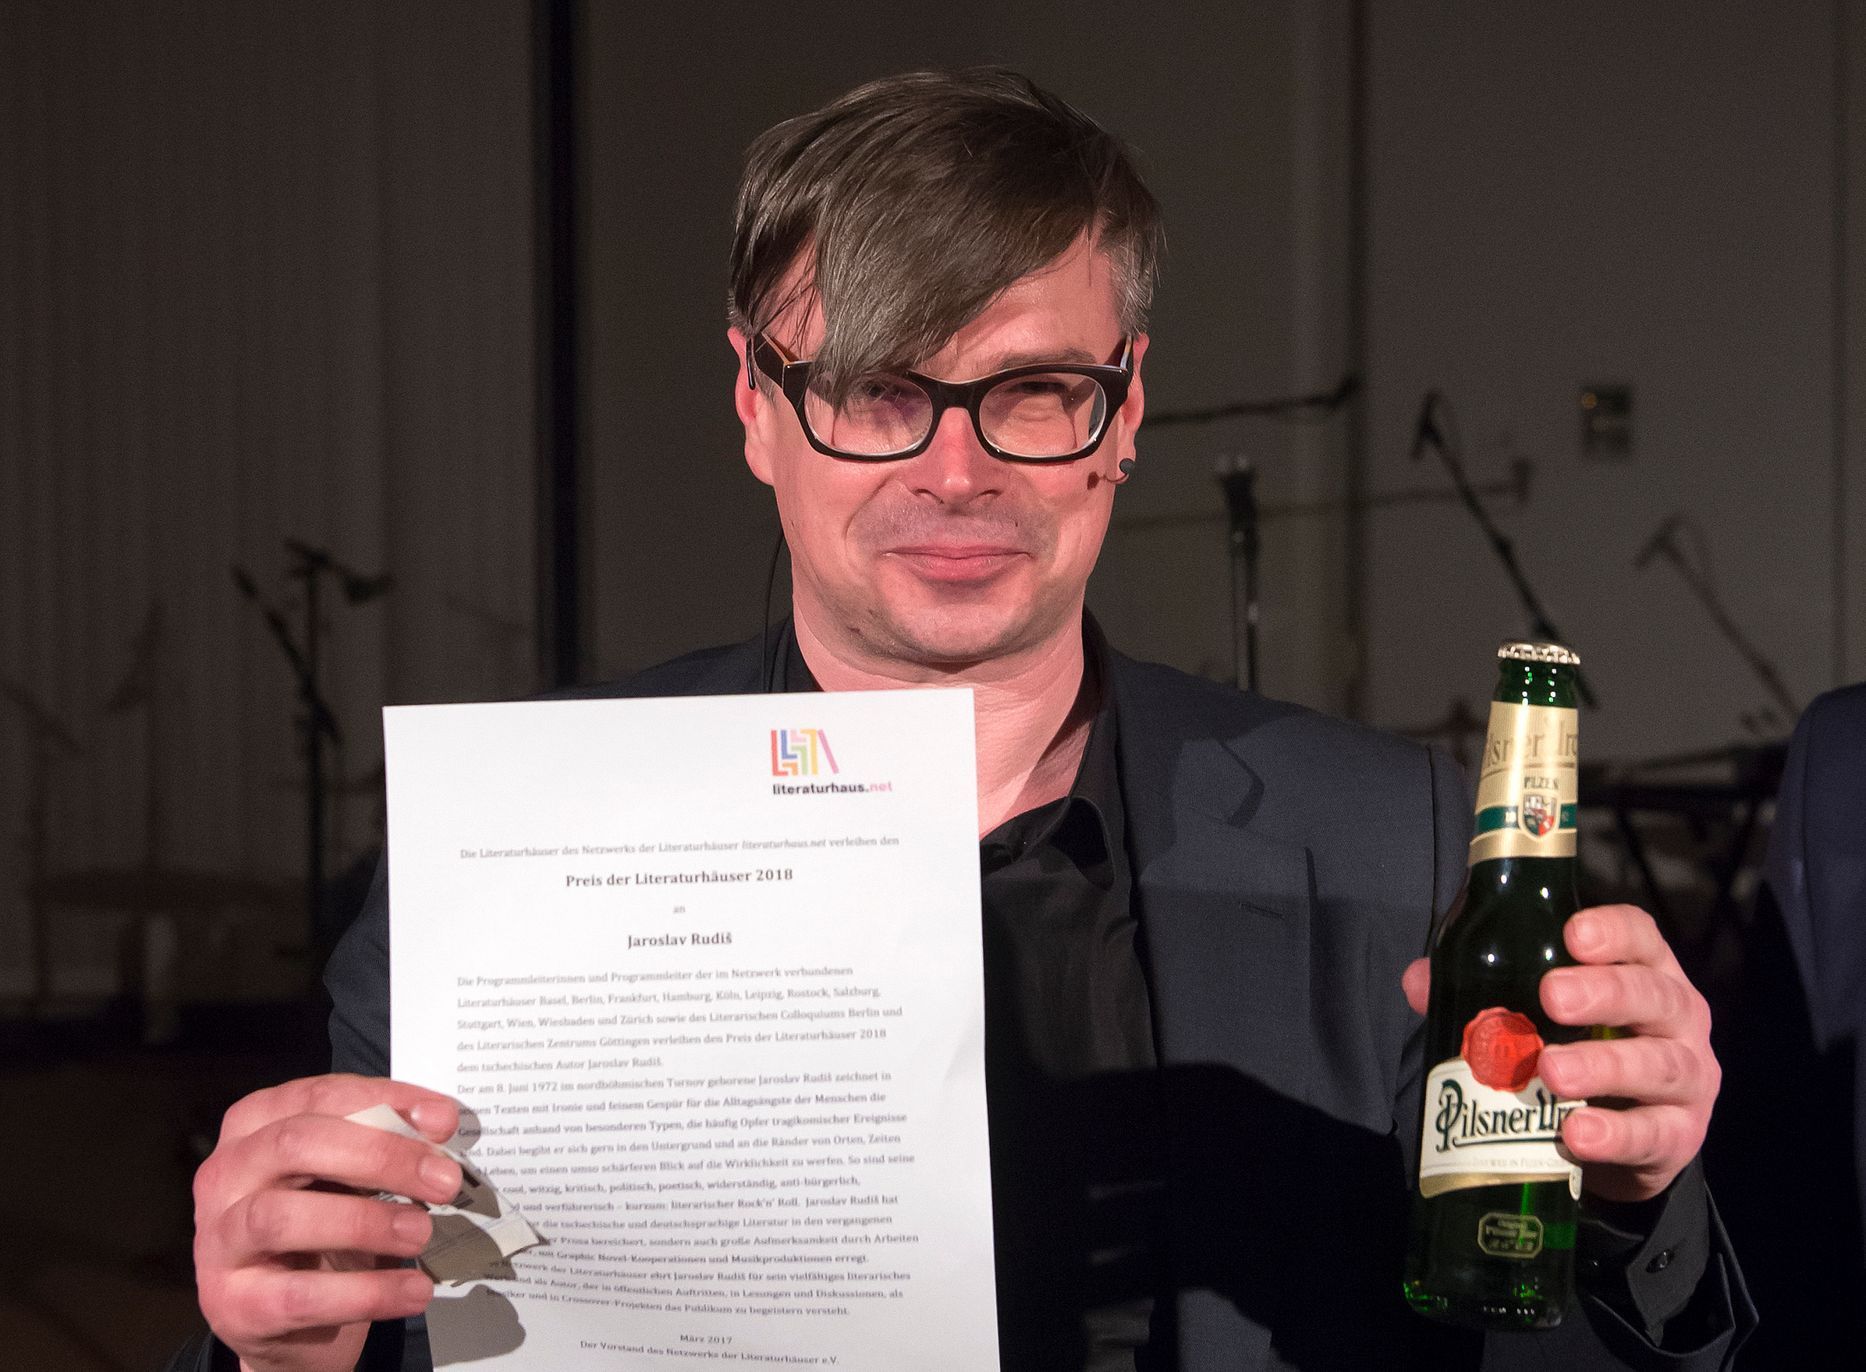 Rudiš - Preis der Literaturhauser